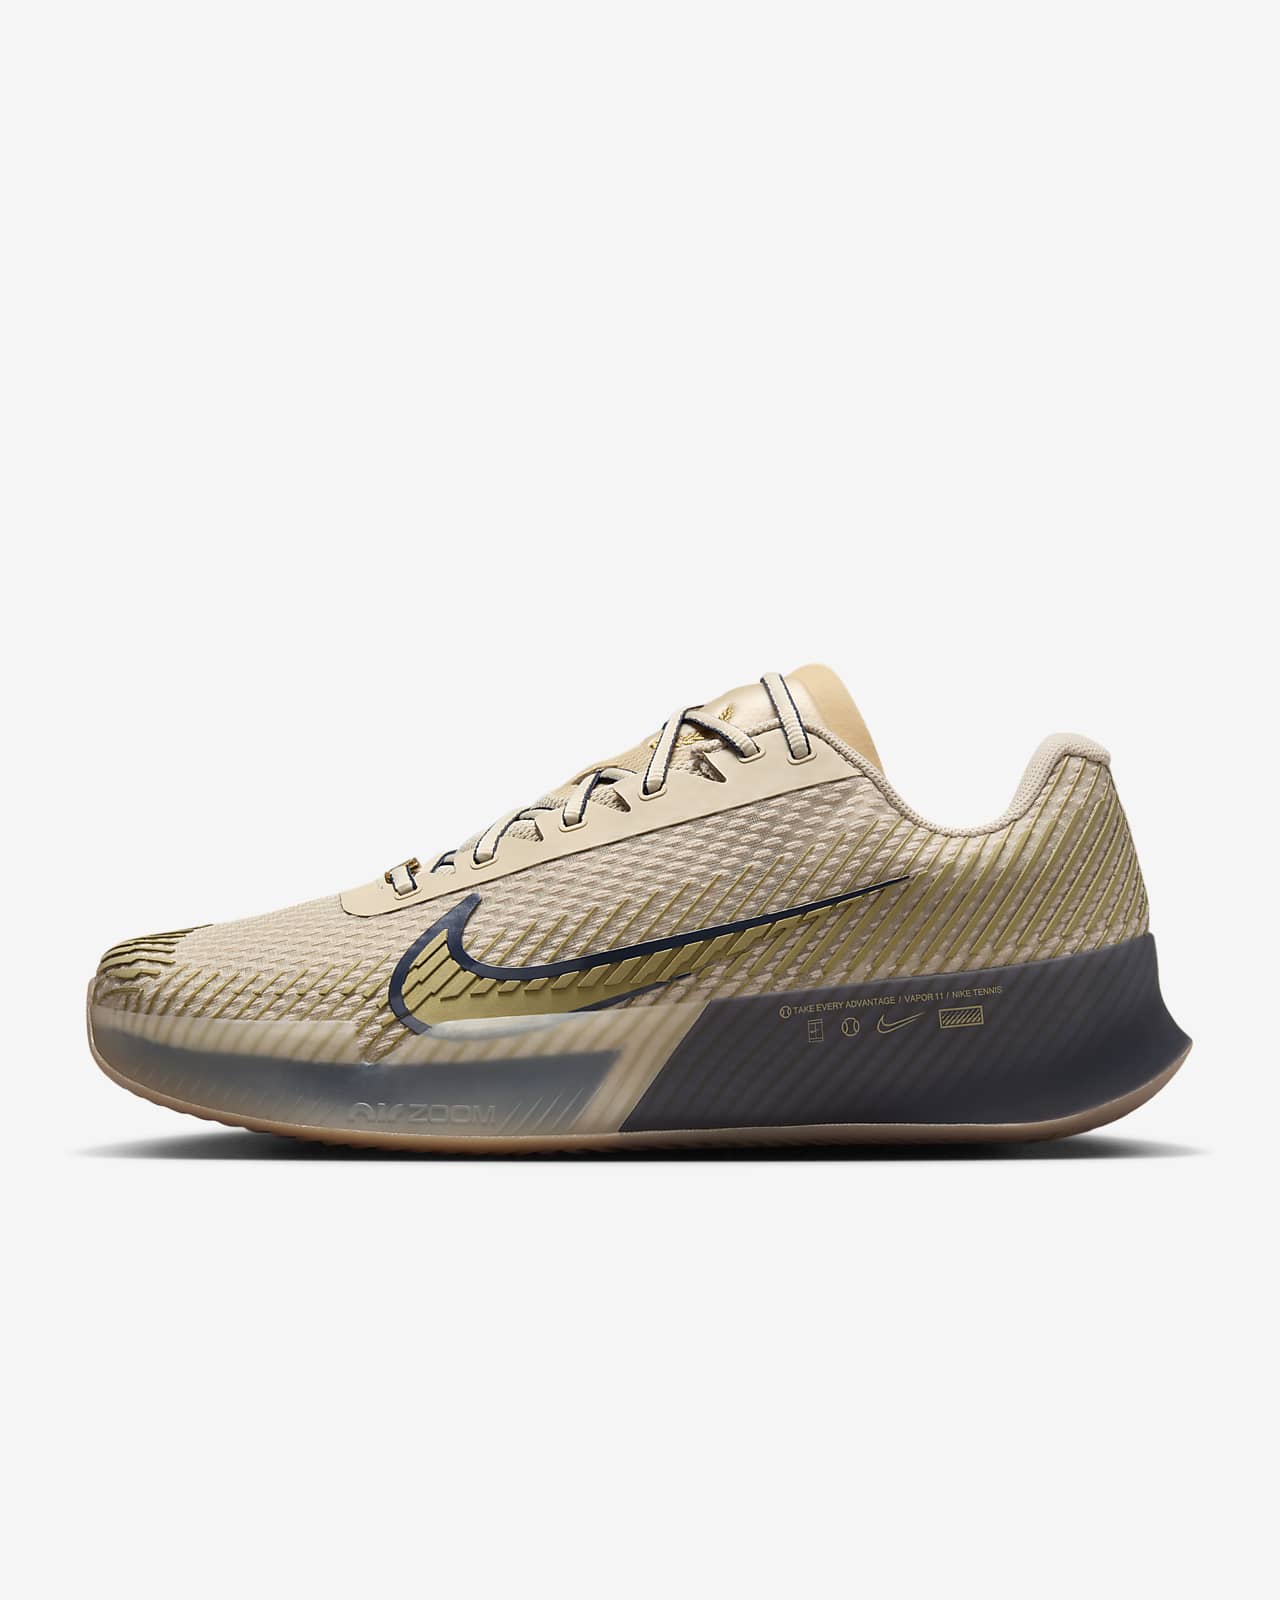 NikeCourt Air Zoom Vapor 11 Premium Men's Clay Court Tennis Shoes